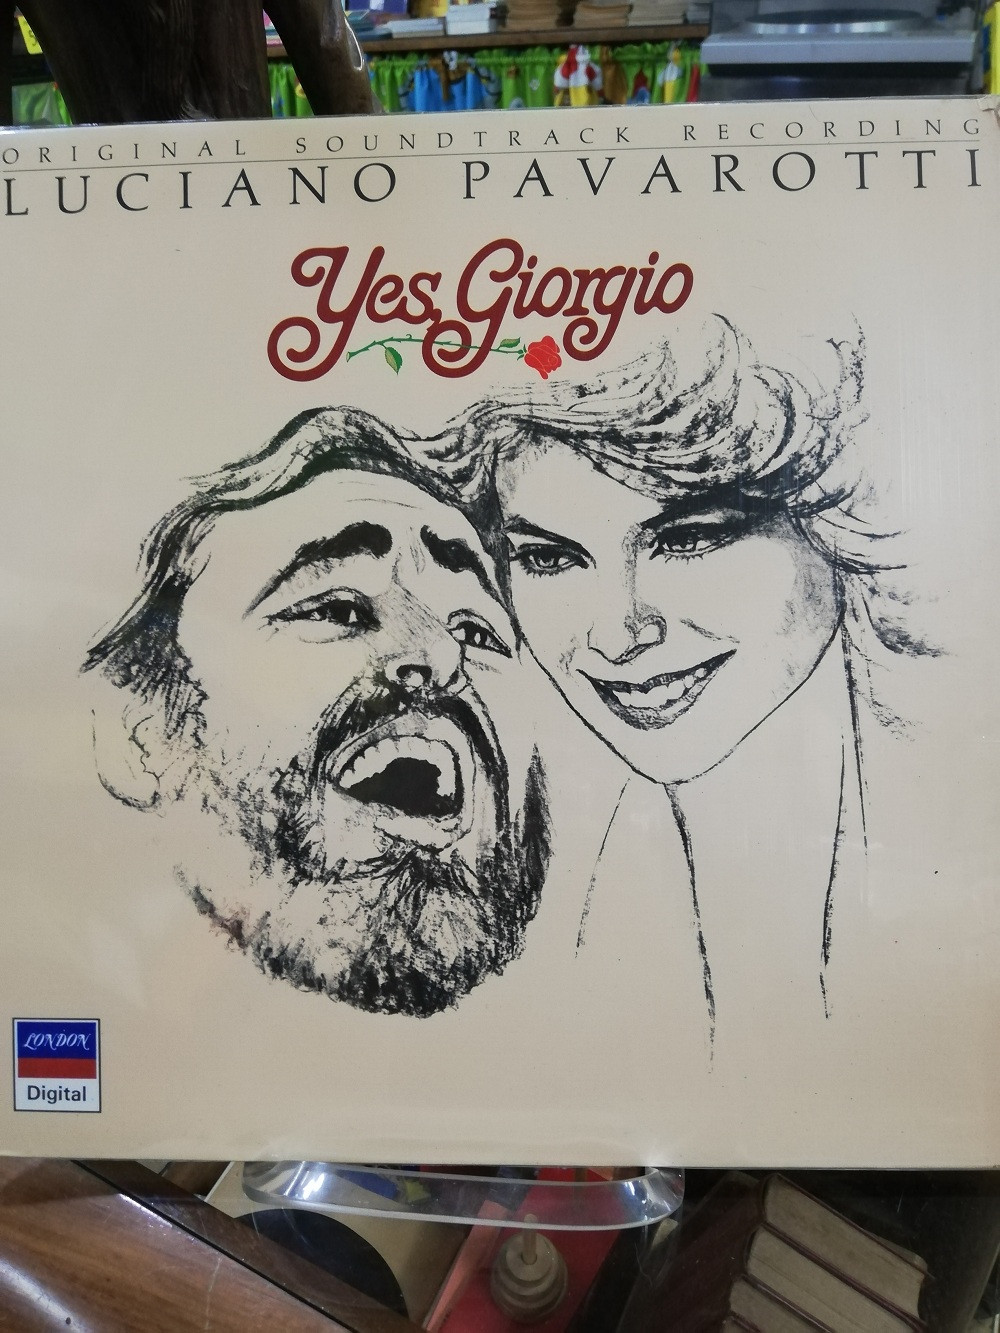 Imagen LP YES, GIORGIO LUCIANO PAVAROTTI - ORIGINAL SOUNDTRACK RECORDING 1